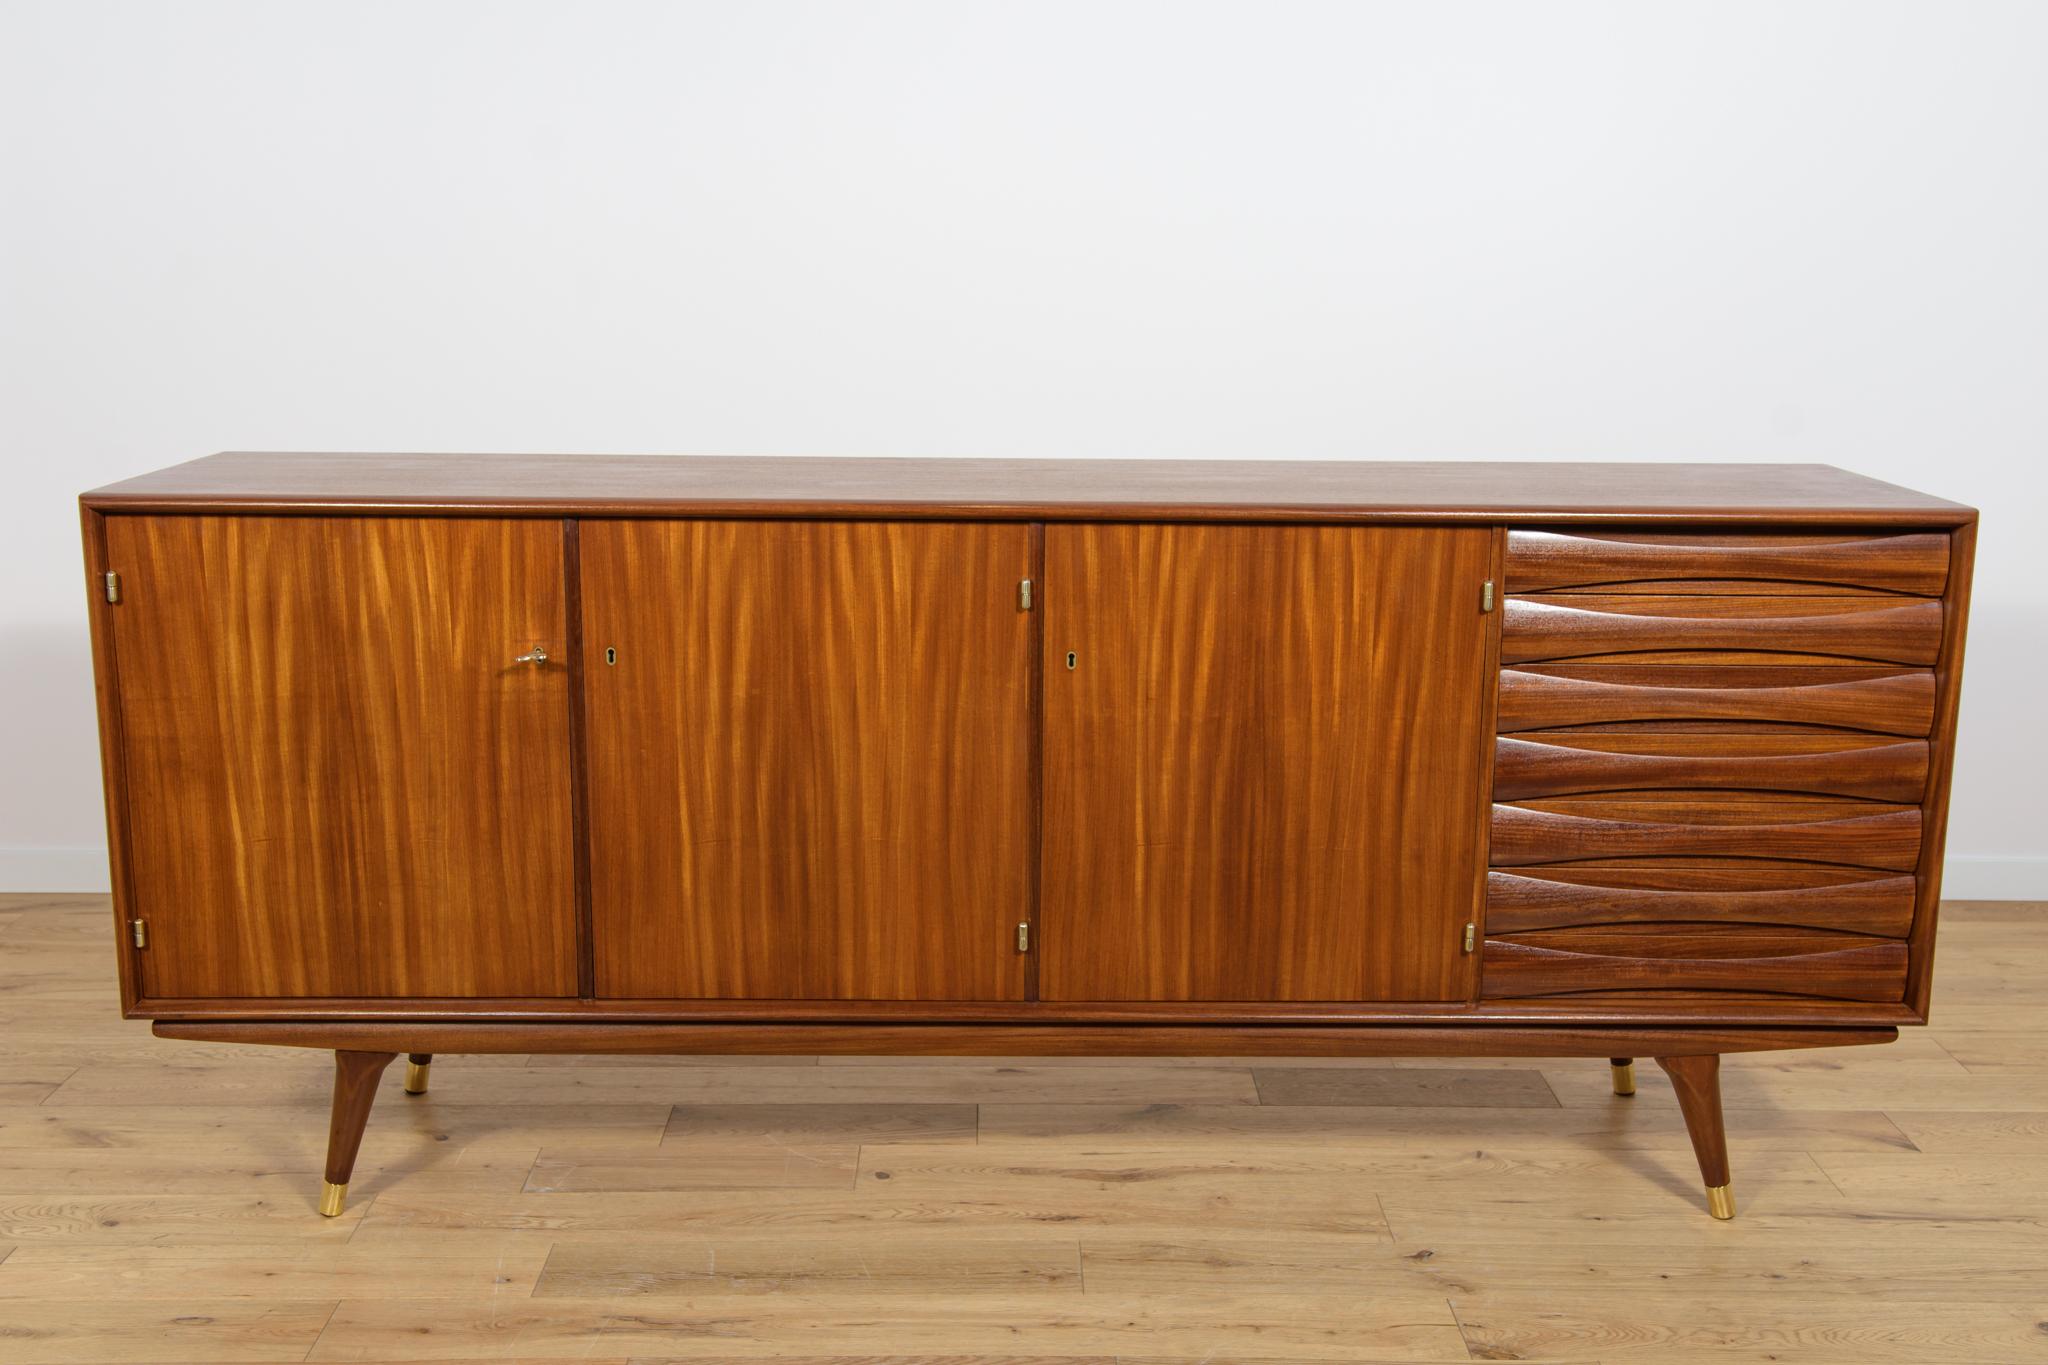 Das Sideboard aus Teakholz wurde in den 1960er Jahren von Sven Andersen für seine norwegische Möbelfabrik Stavanger entworfen. Die Möbel wurden fachgerecht restauriert, indem alte Anstriche entfernt, mit Eichenbeize gebeizt und mit hochwertigem